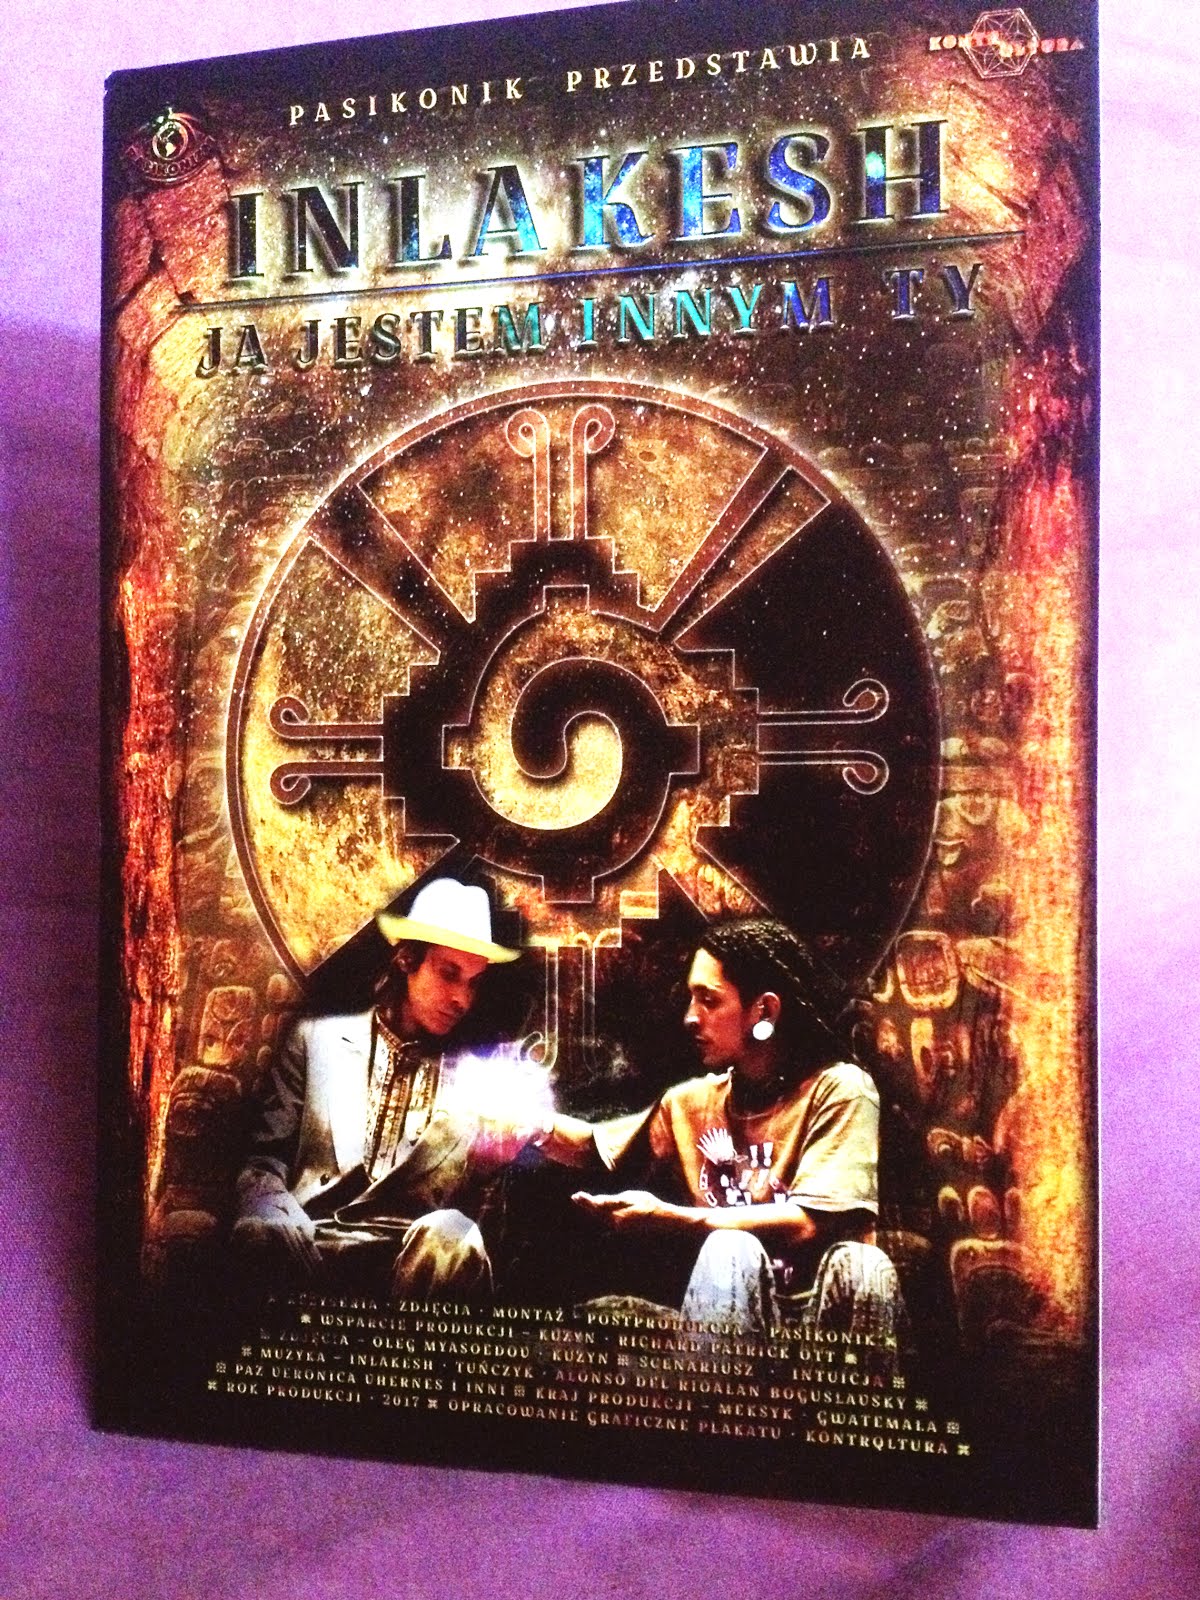 Płyty DVD z filmem "INLAKESH" jak najbardziej dostępne!